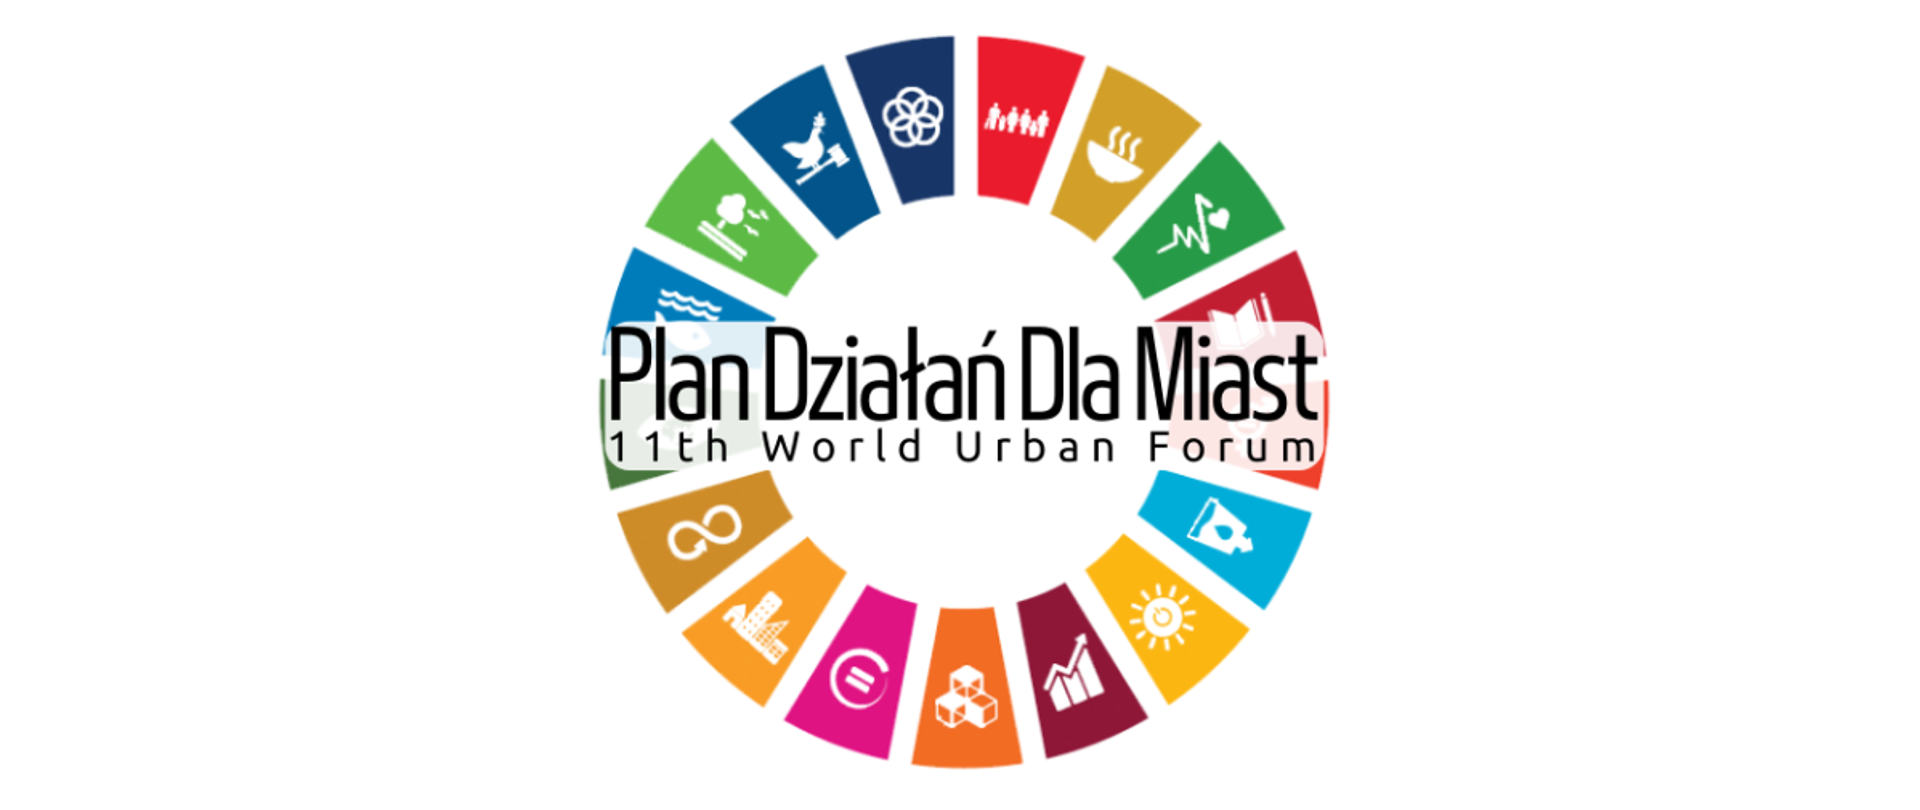 Na grafice logo Planu Działań dla Miast. Na środku tekst:: "Plan Działań Dla Miast, 11th World Urban Forum". Wokół tekstu kolorowe kafelki z grafikami, każdy odpowiada za jeden cel zrównoważonego rozwoju. 